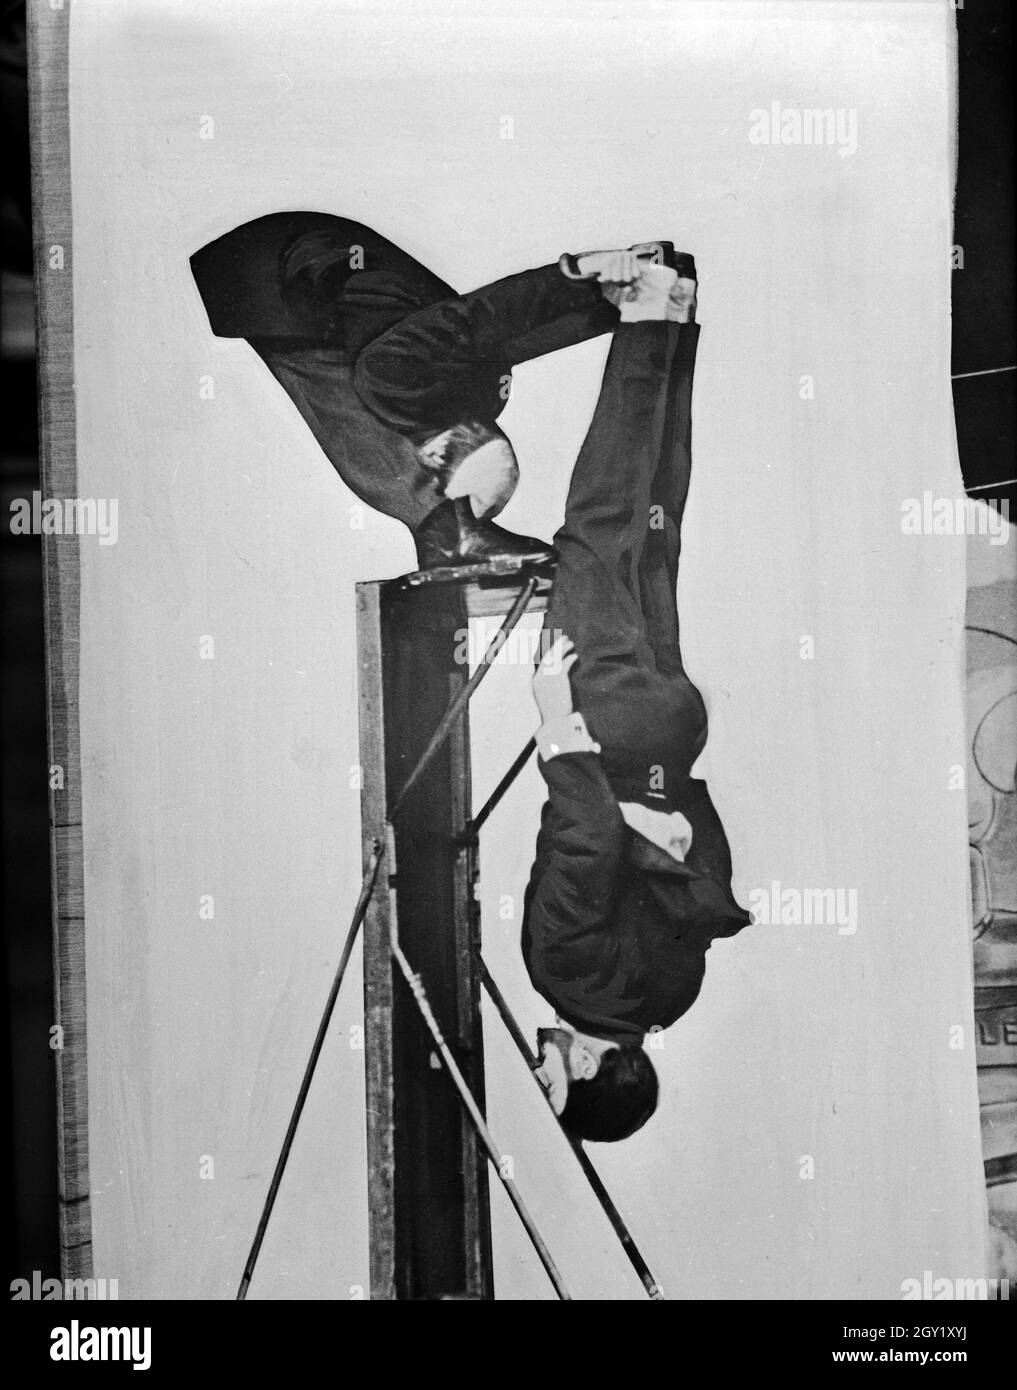 Reproduktion aus dem Mauritius Verlag: zwei Akrobaten bei einem Kunststück, Deutschland 1930er Jahre. Reproduktion von Mauritius Verlag: zwei akrobaten zeigen ein Meisterwerk, Deutschland, 1930. Stockfoto